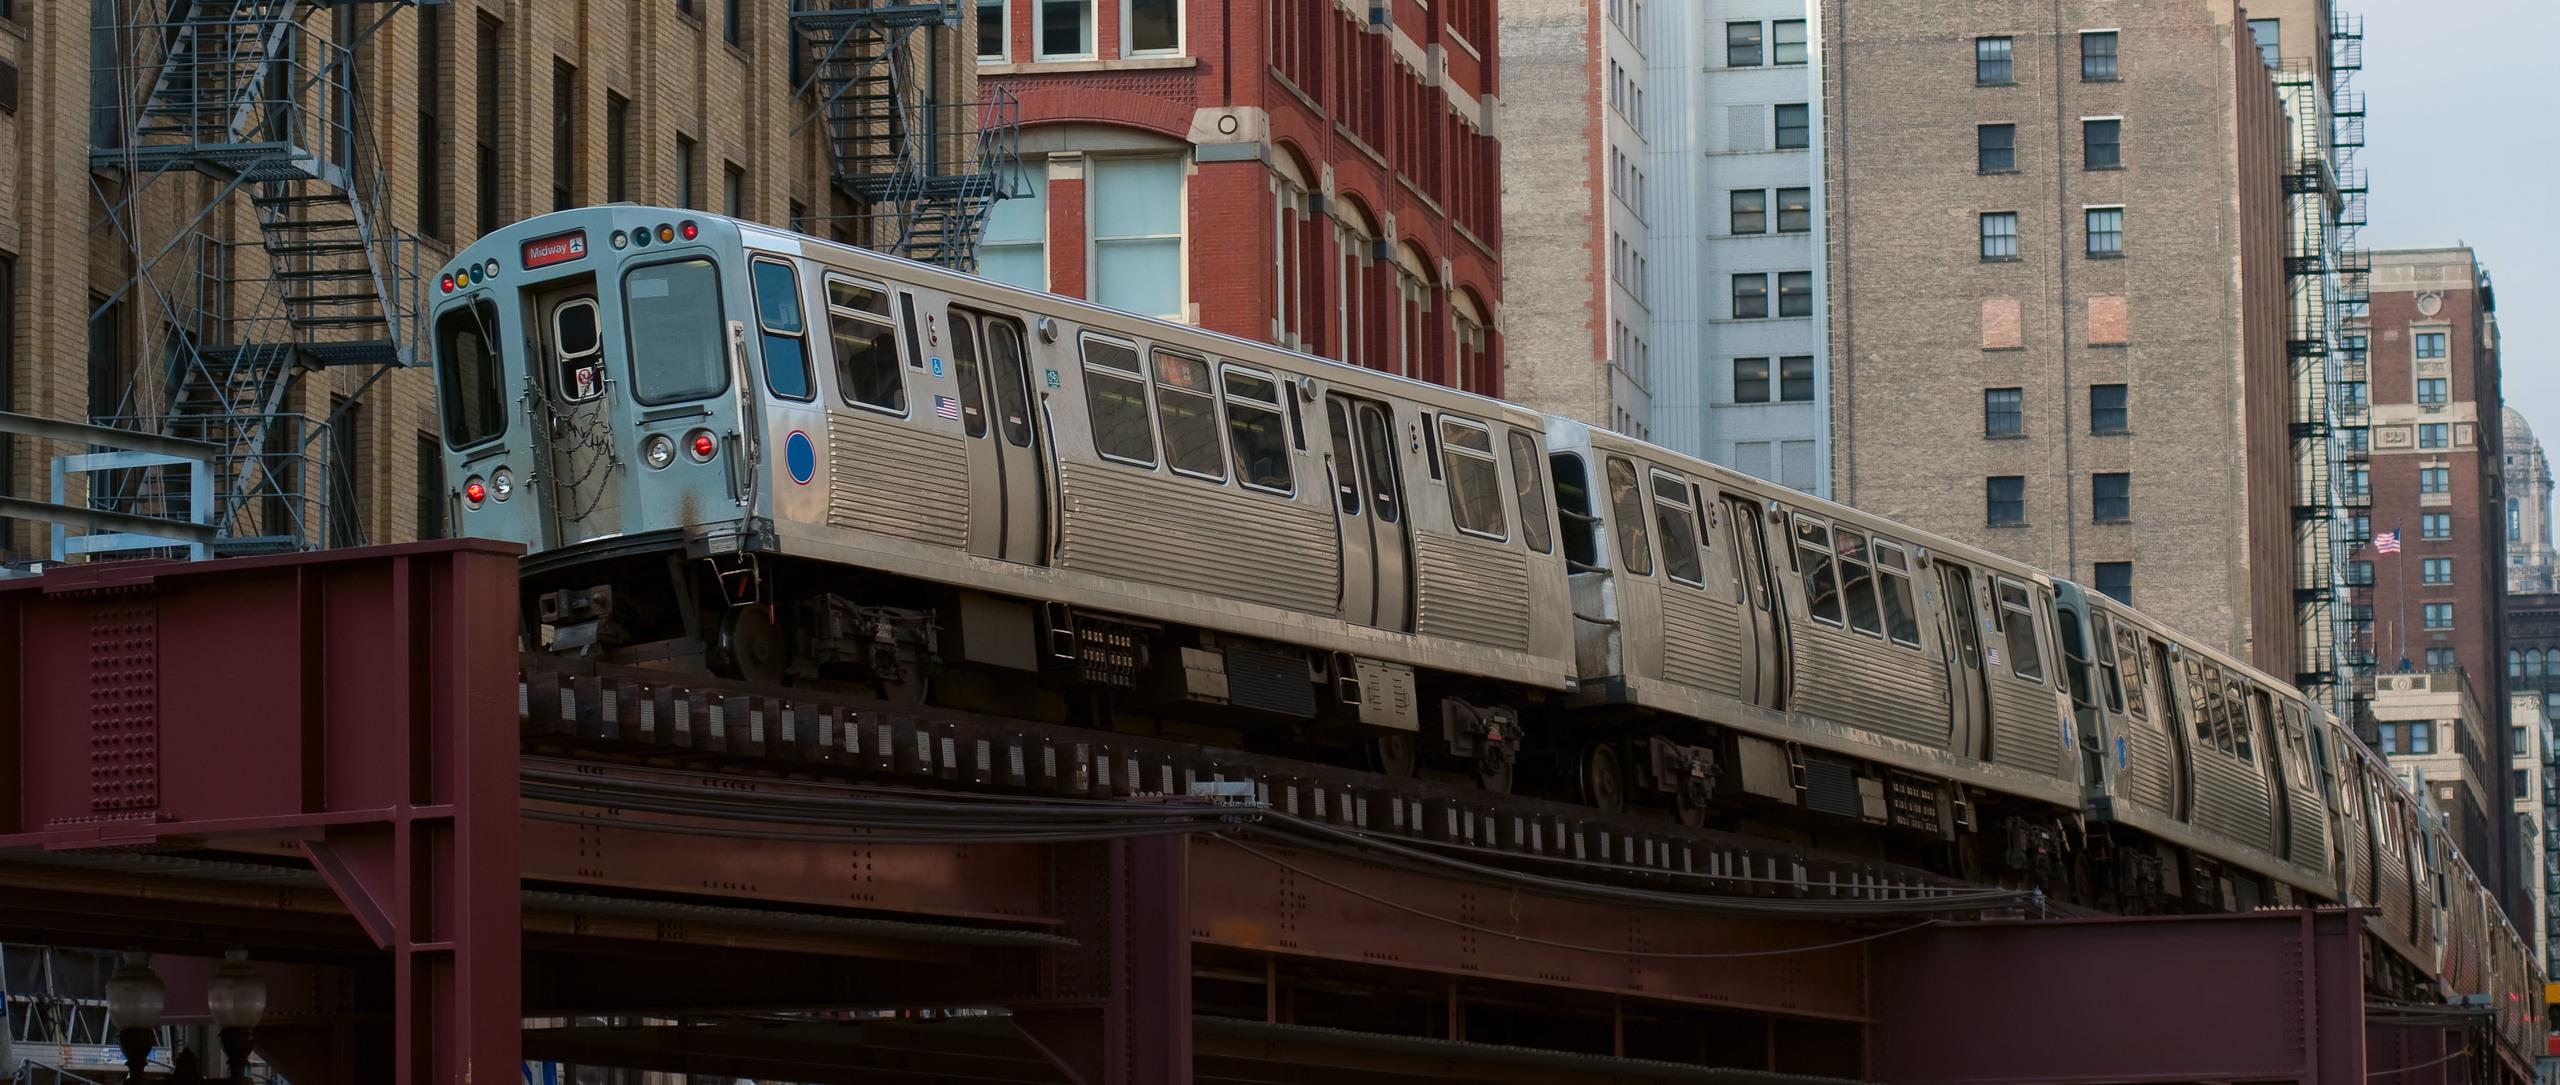 The metro train going through Chicago